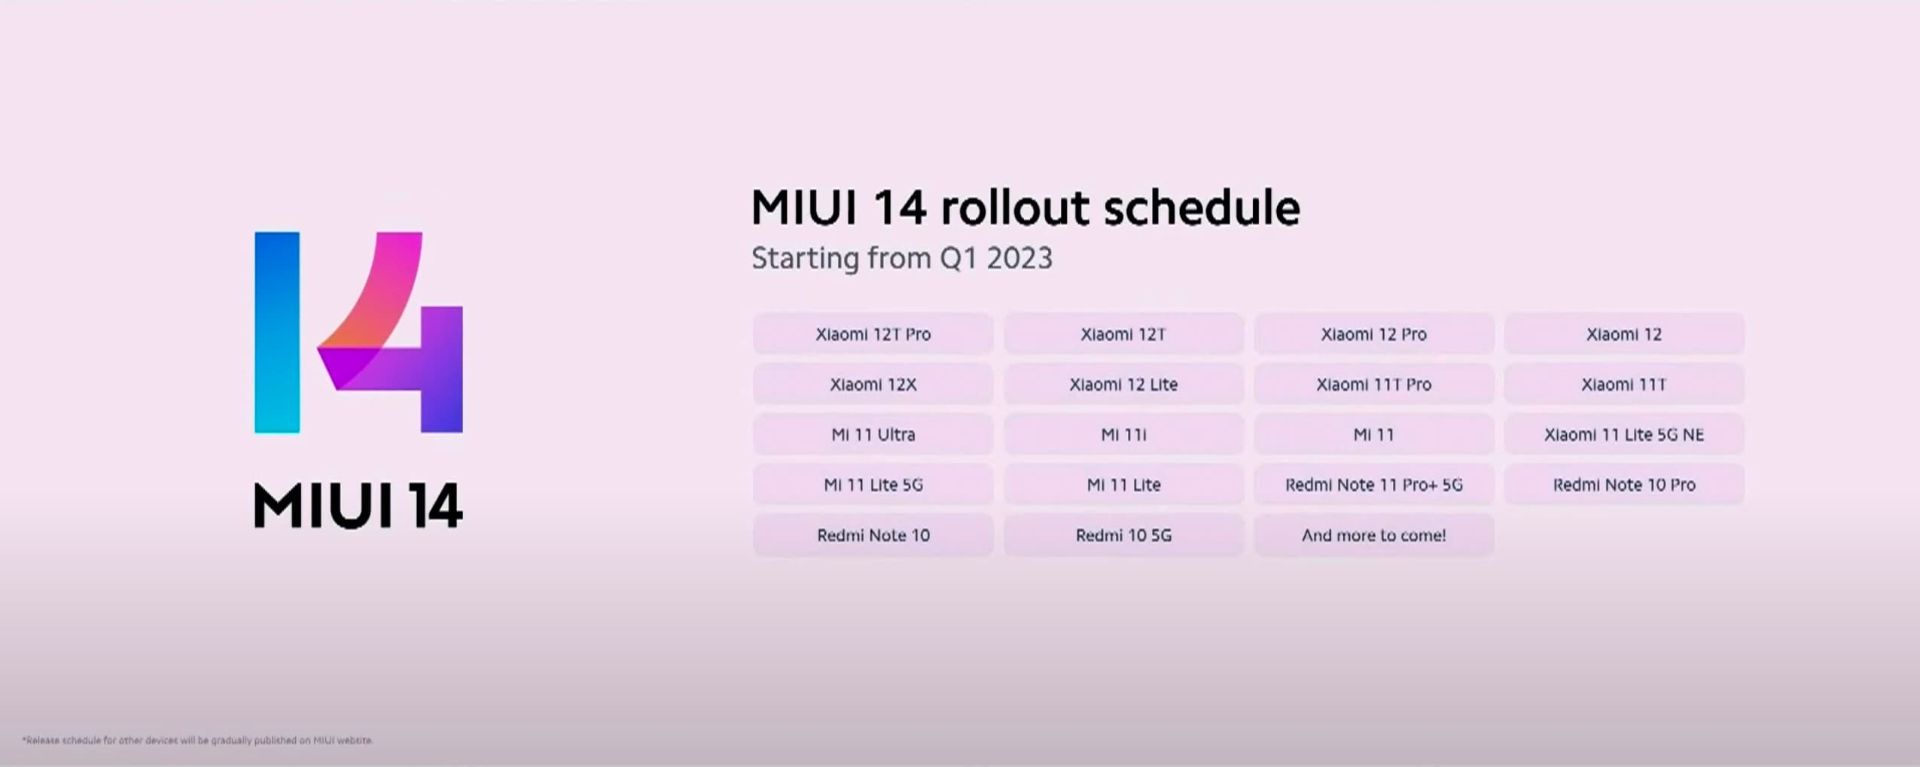 لیست گوشی های MIUI 14 در فصل اول ۲۰۲۳